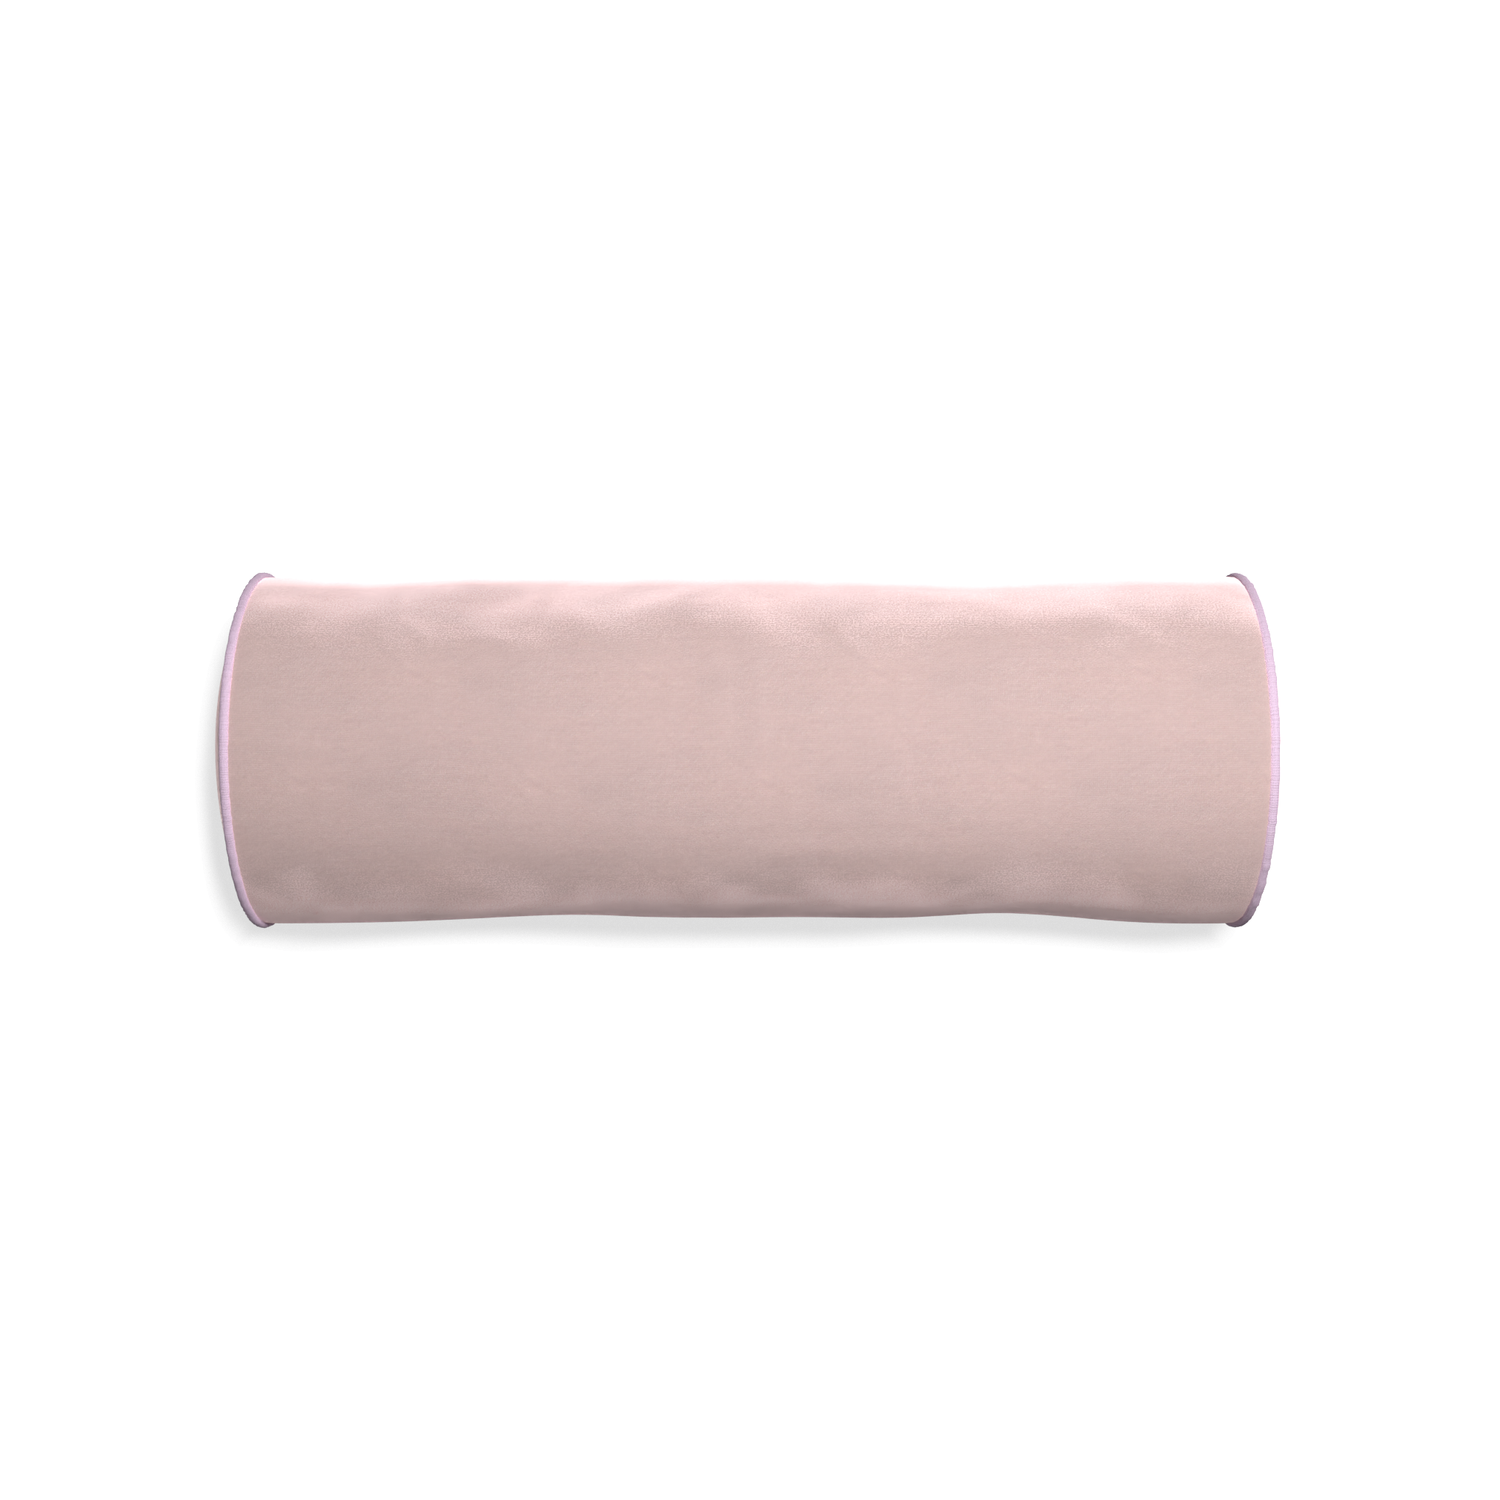 Bolster rose velvet custom pillow with l piping on white background